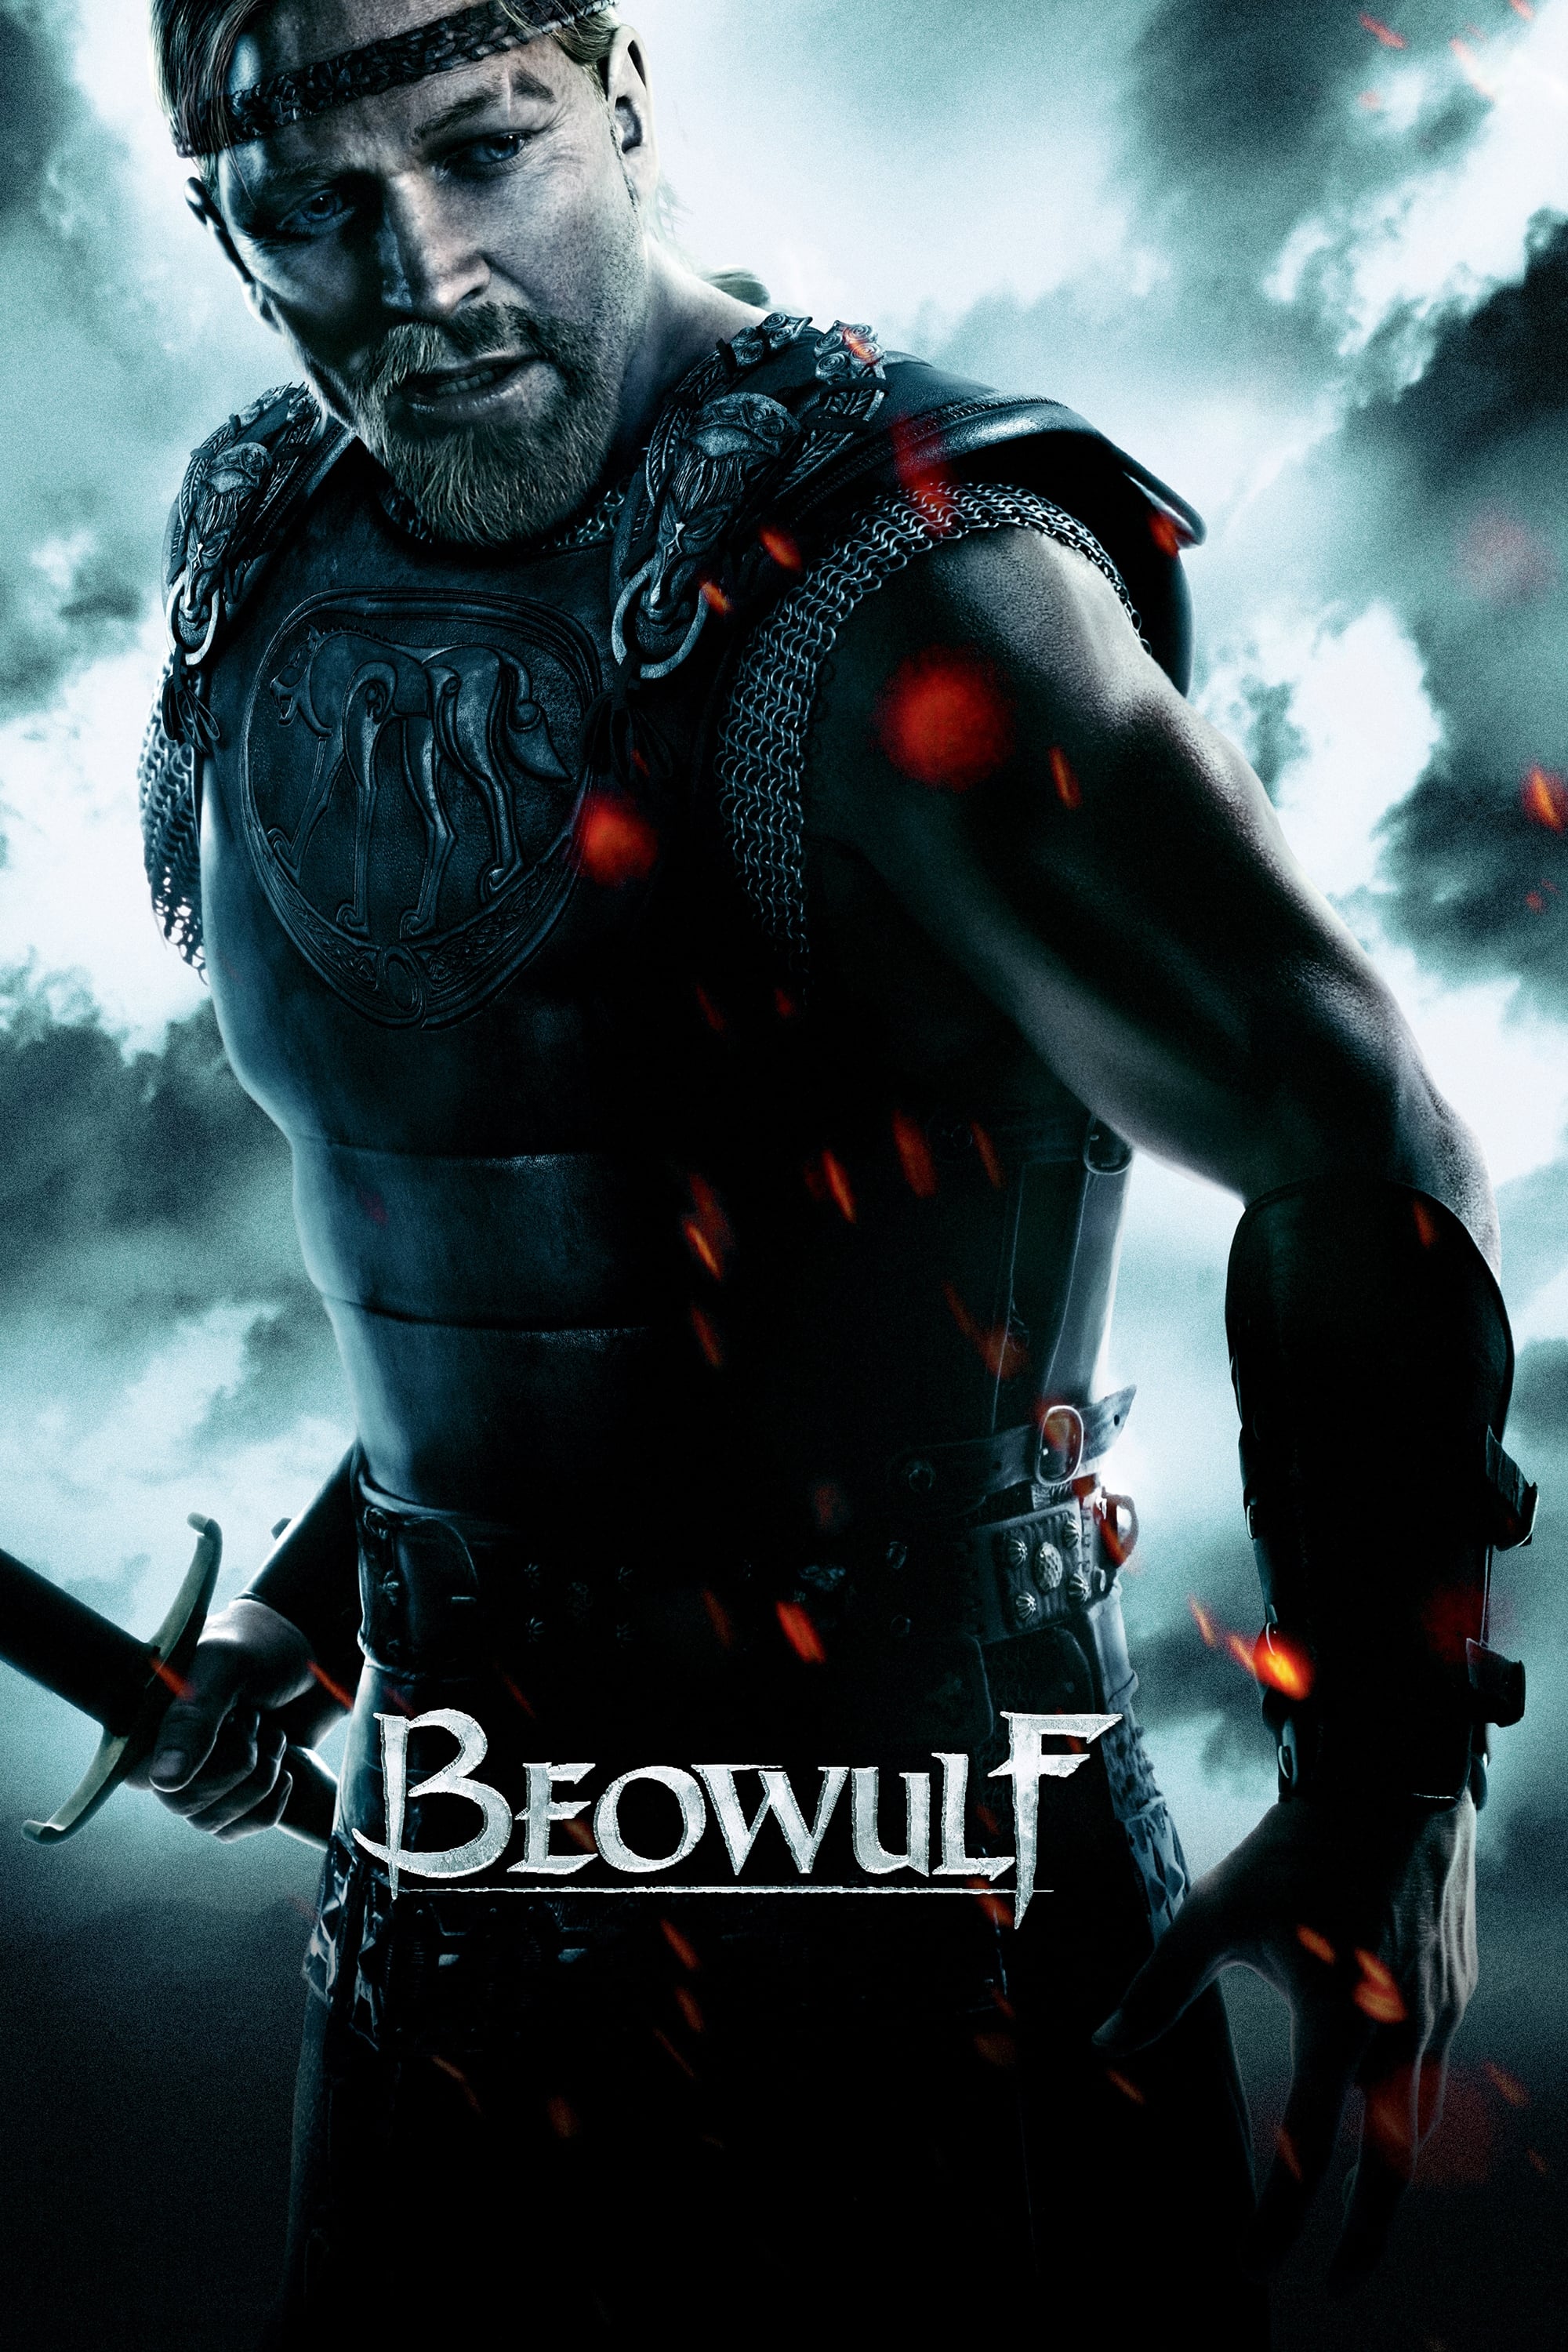 A Lenda de Beowulf